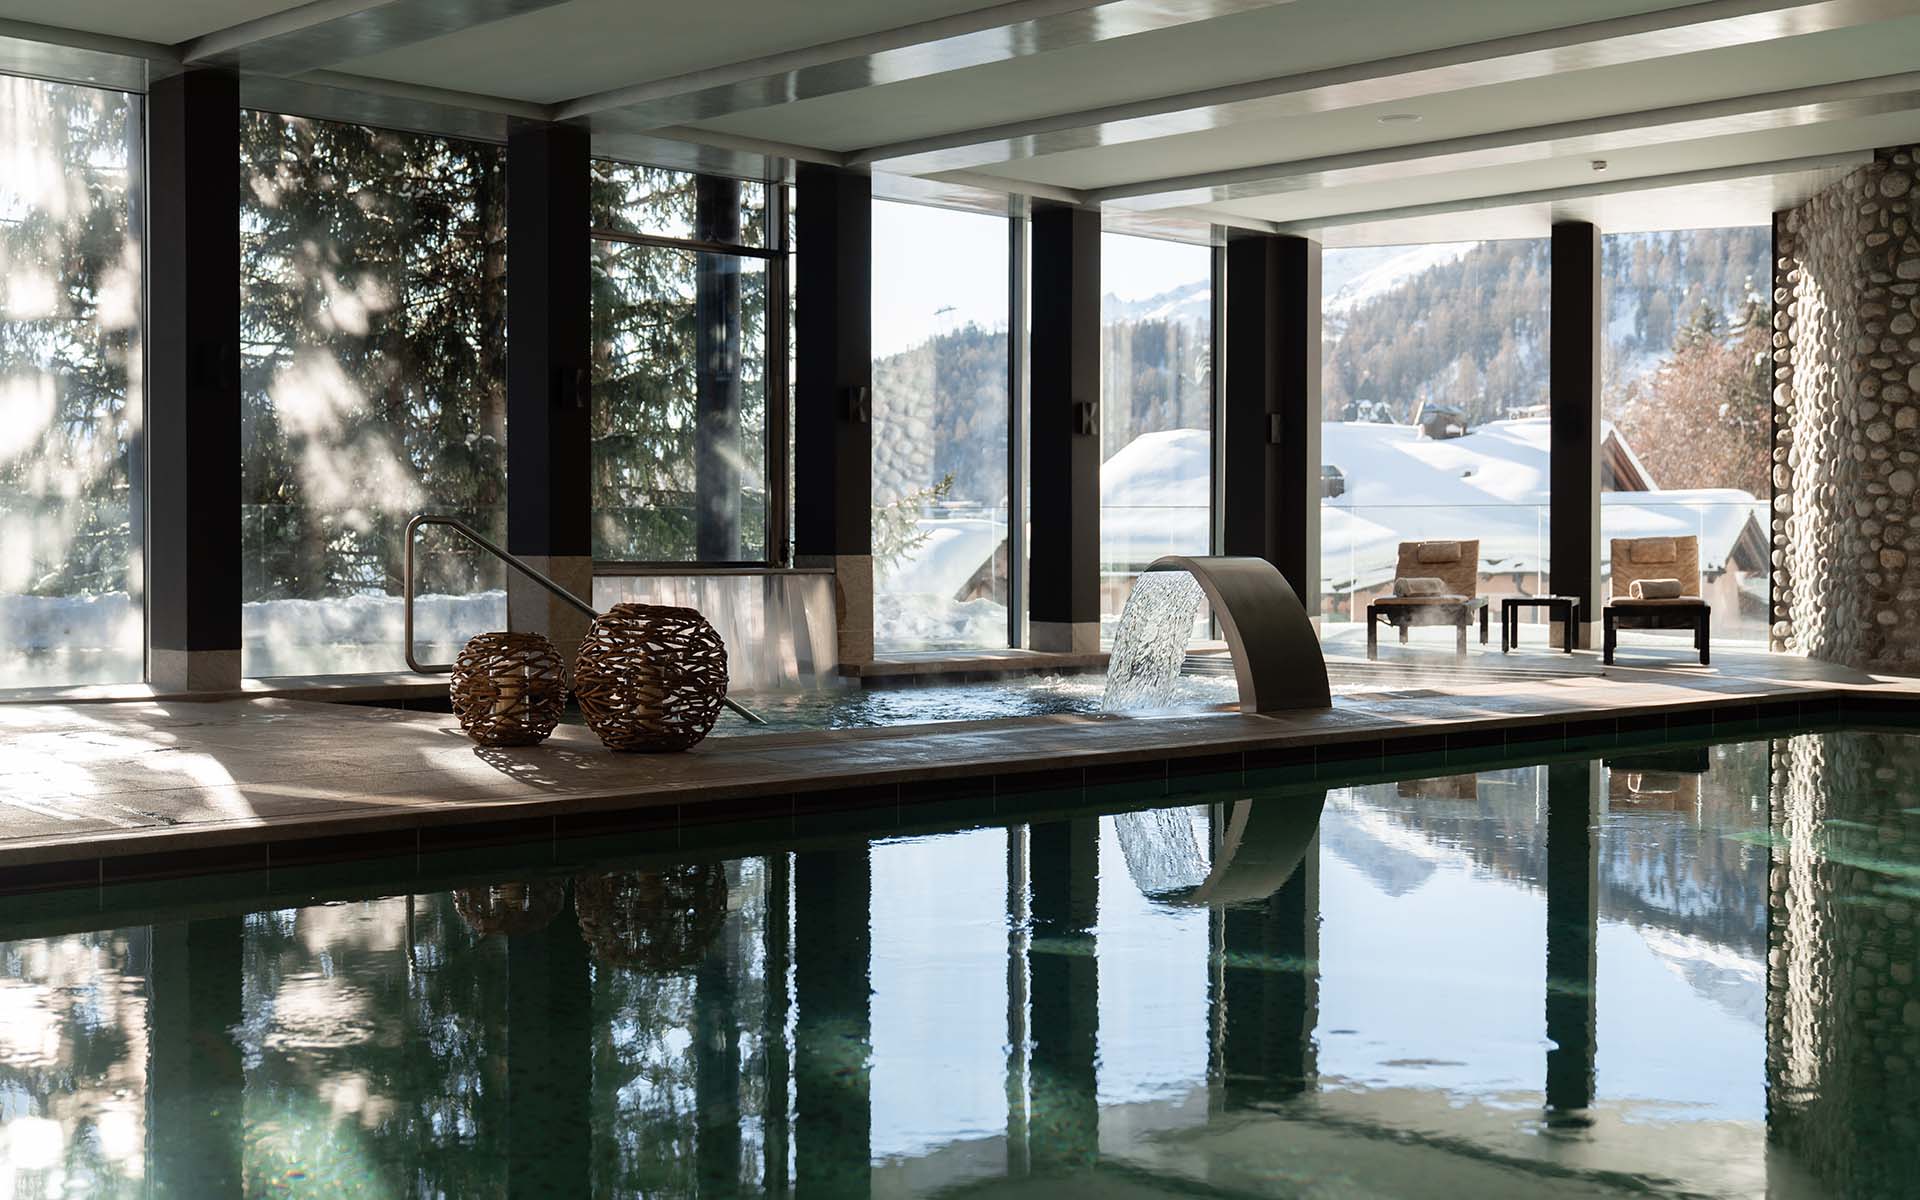 Carlton Penthouse Suite, St Moritz